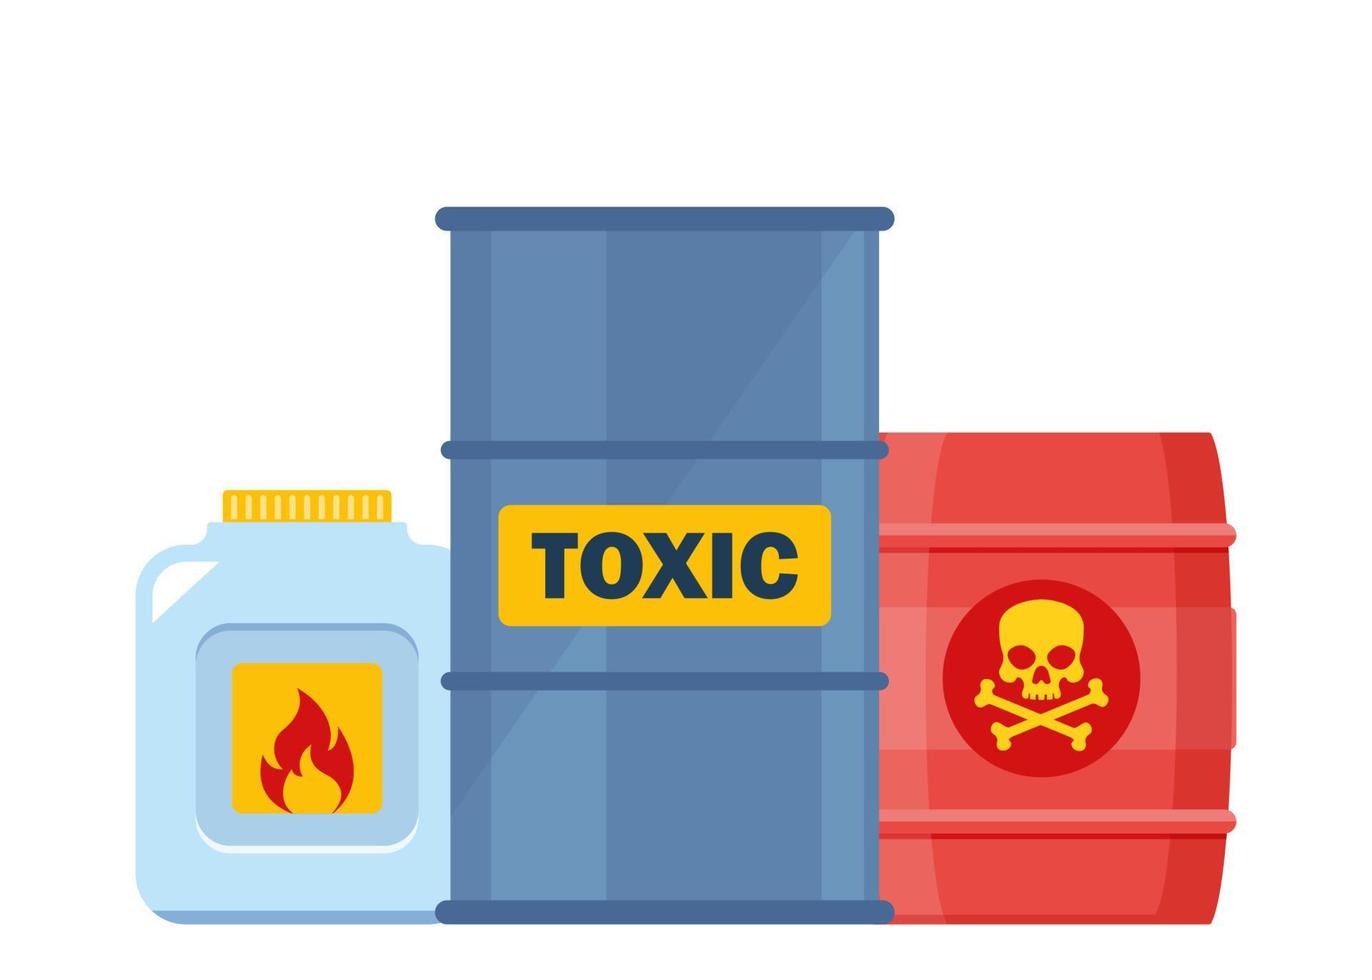 uppsättning av behållare med toxisk och kemisk ämnen. farlig toxisk, biologisk fara, radioaktiv, brandfarlig ämnen. vektor illustration.